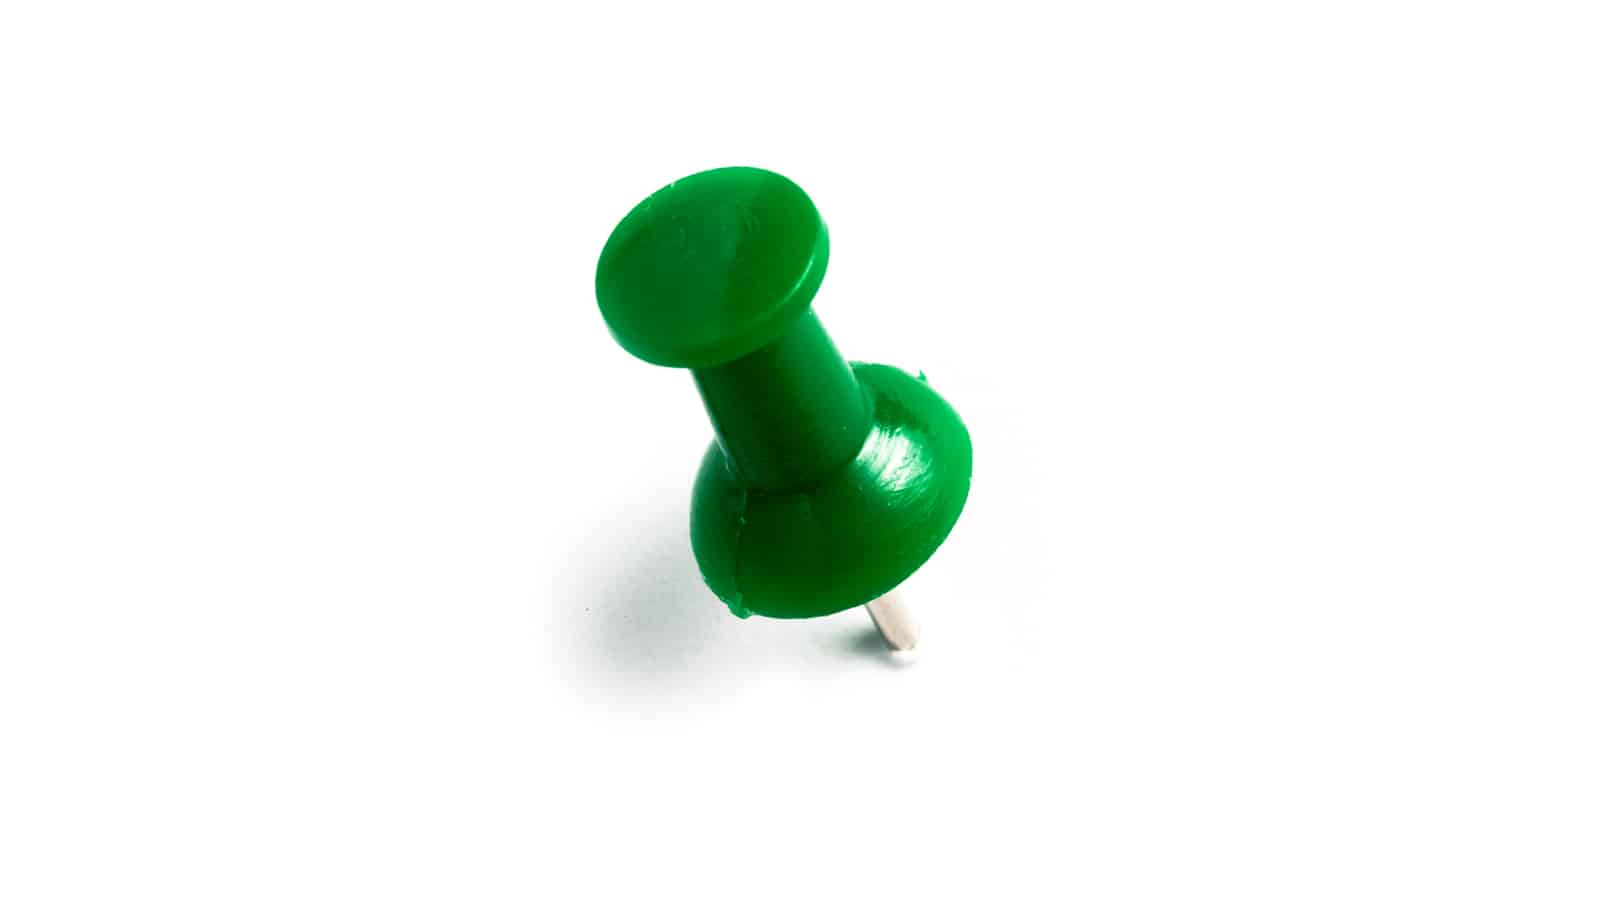 green thumbtack png